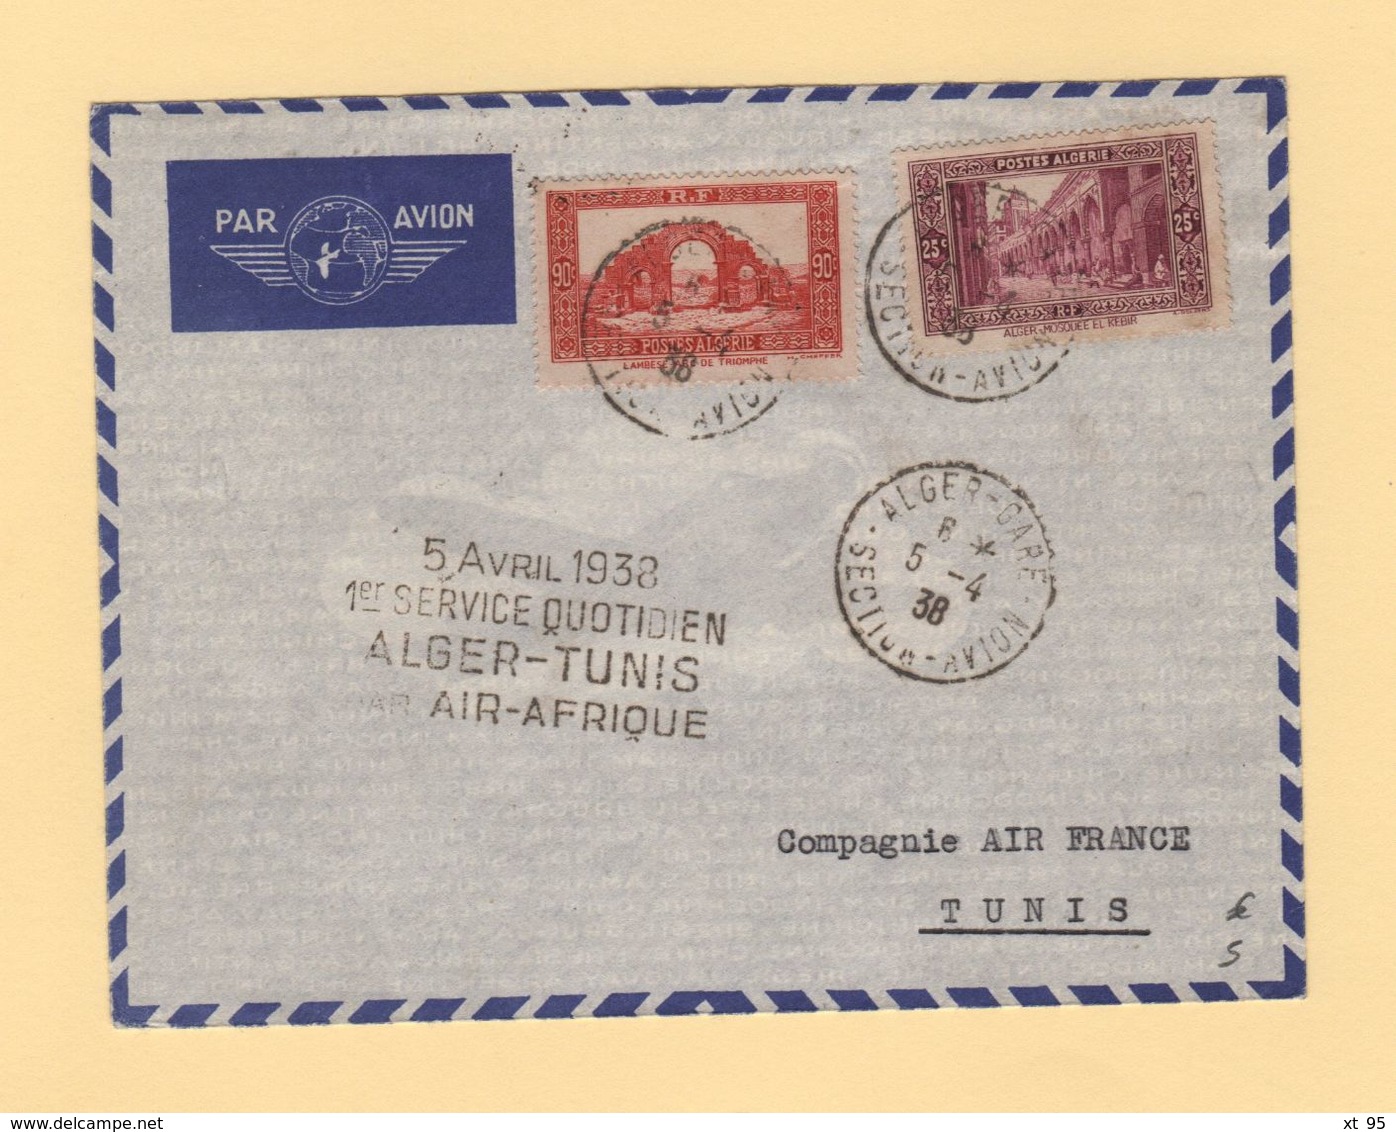 Algerie - 1er Service Quotidien Alger Tunis Par Air Afrique - 5-4-1938 - Airmail